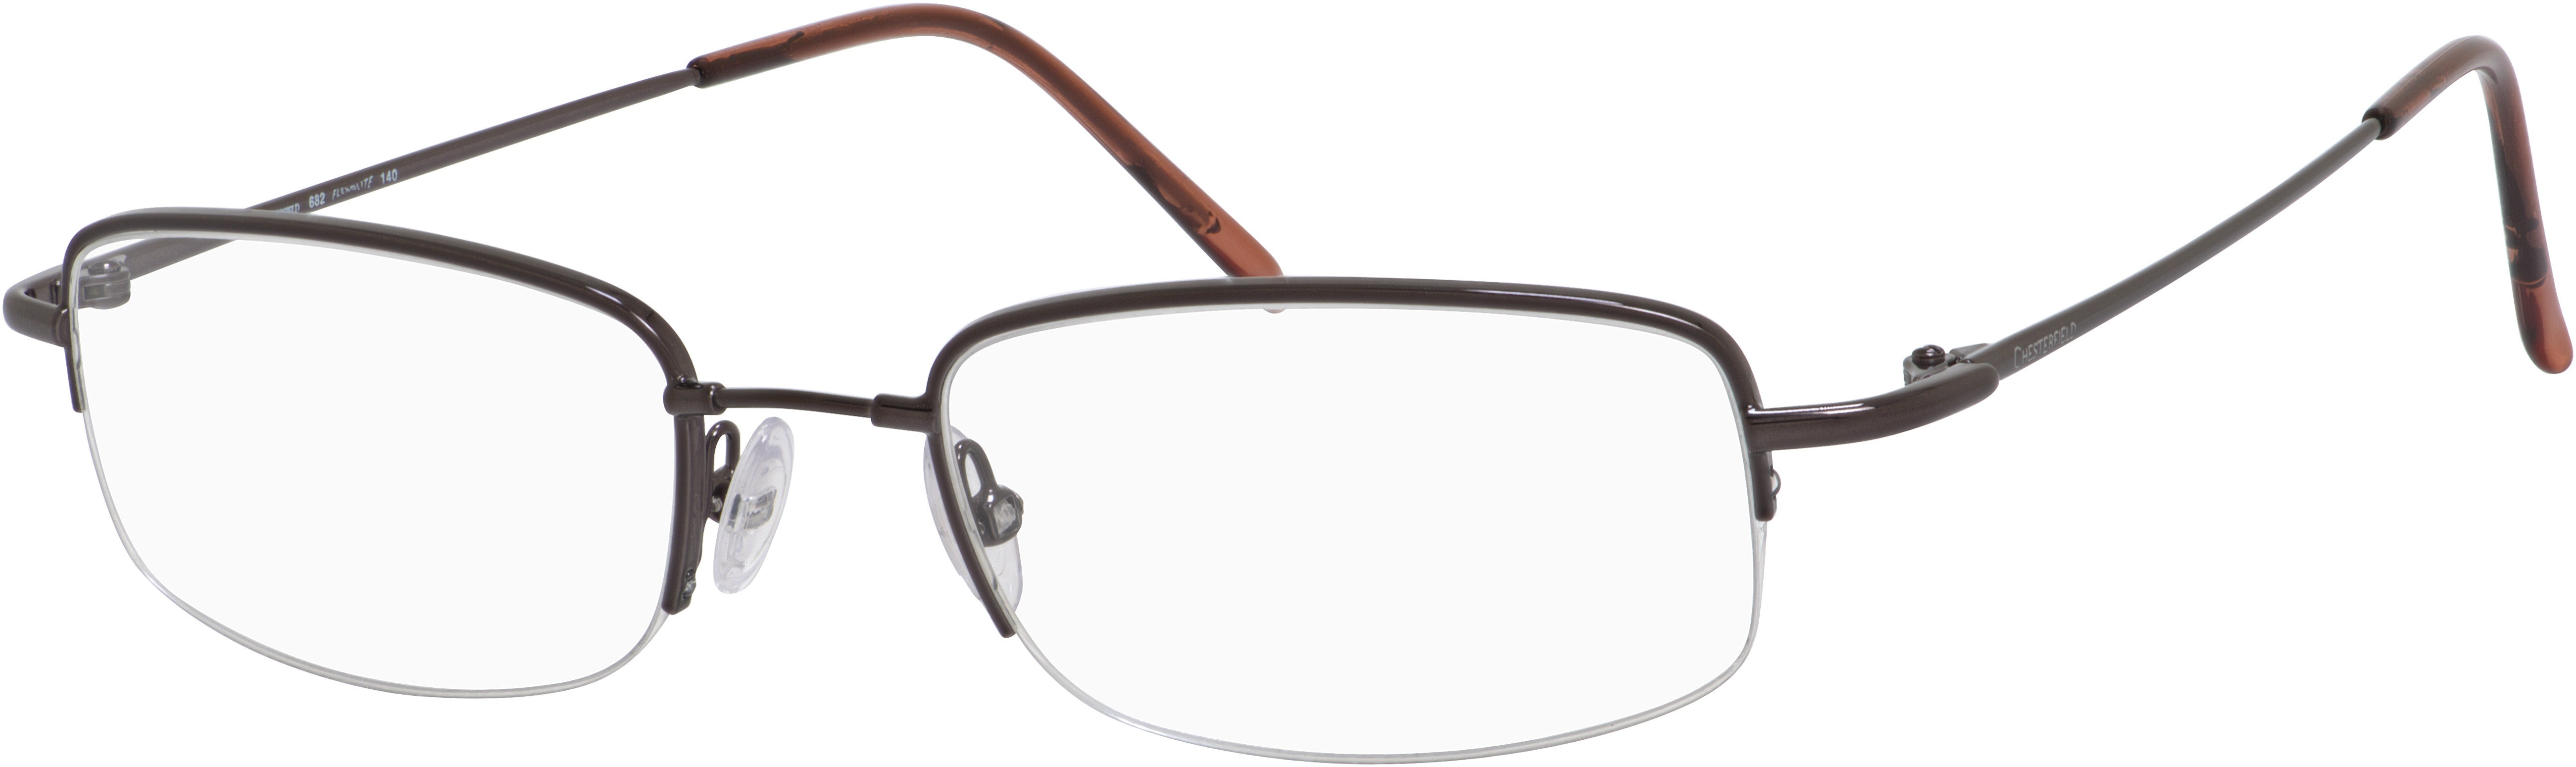  Chesterfield 682 Rectangular Eyeglasses 0TZ2-0TZ2  Gunmetal (00 Demo Lens)